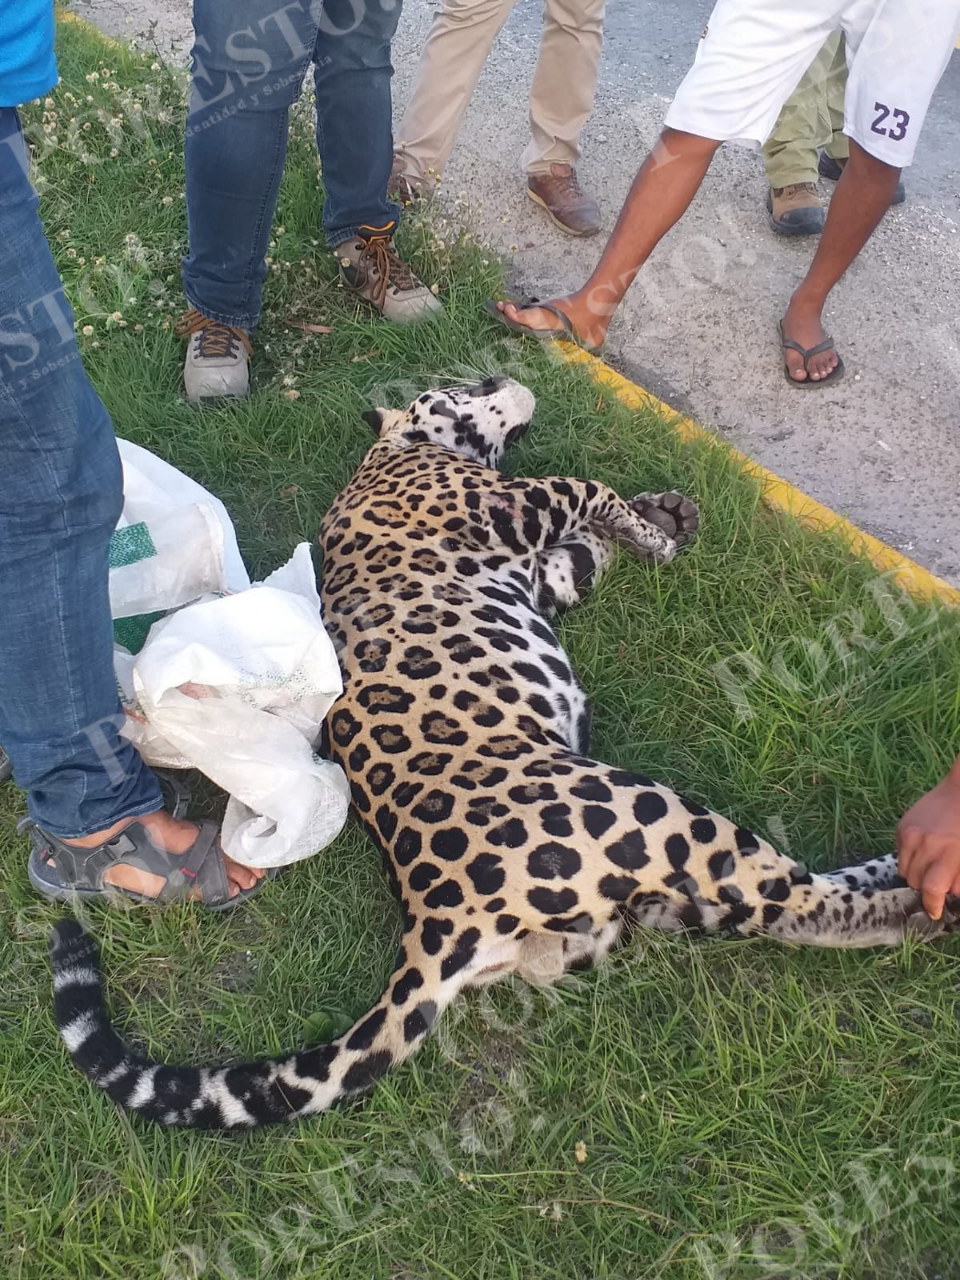 Atropellan a jaguar en la vía rumbo a Tulum